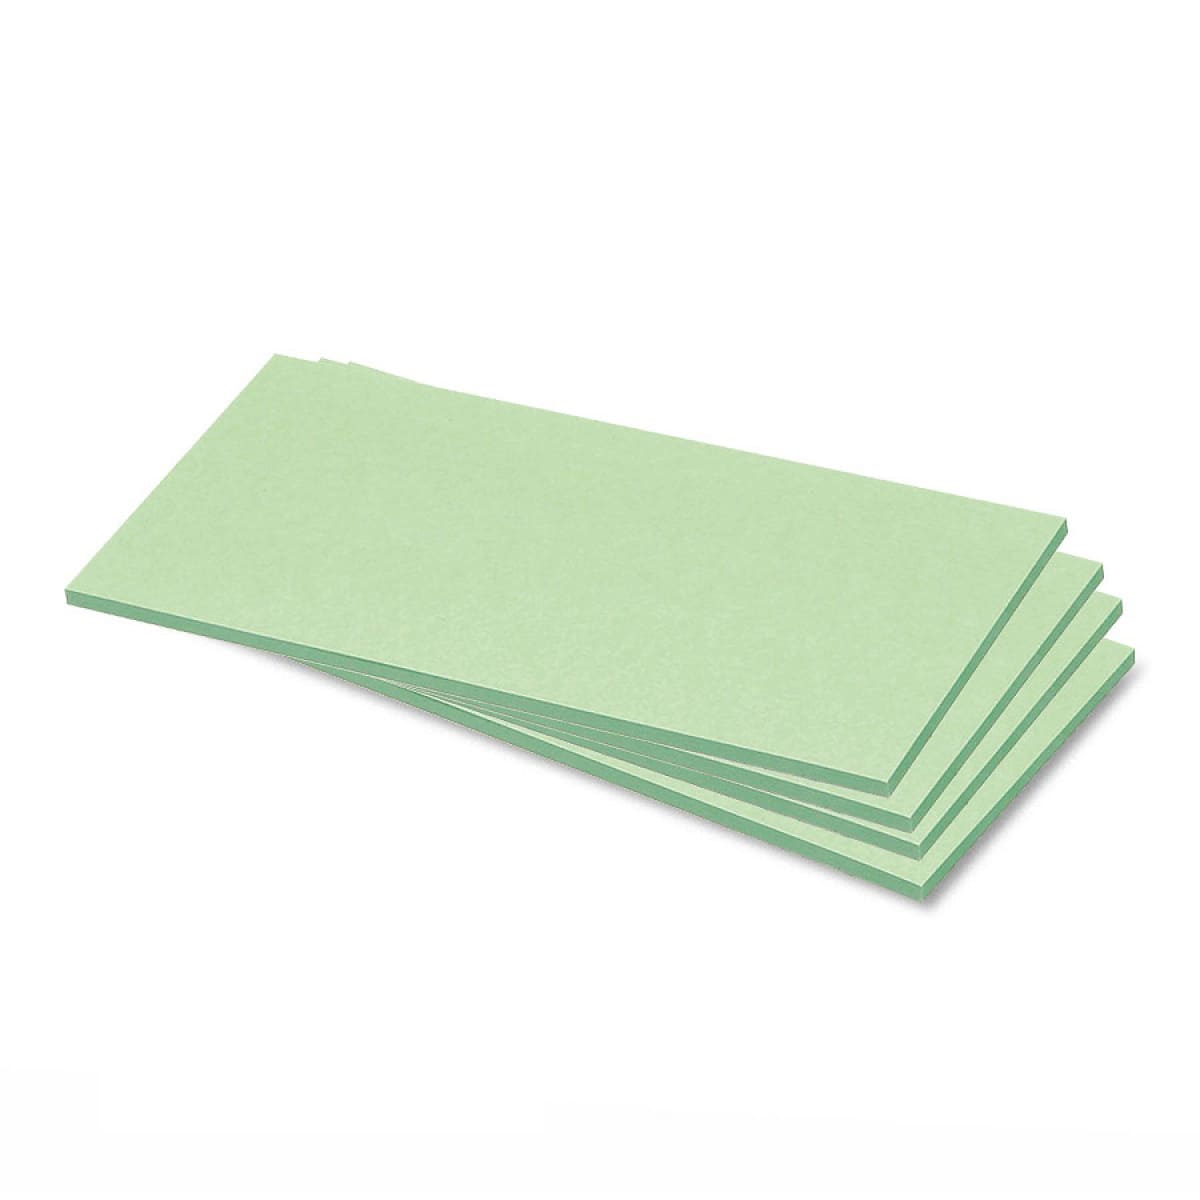 Zelfklevende rechthoekkaarten, uni kleuren- 4 grün